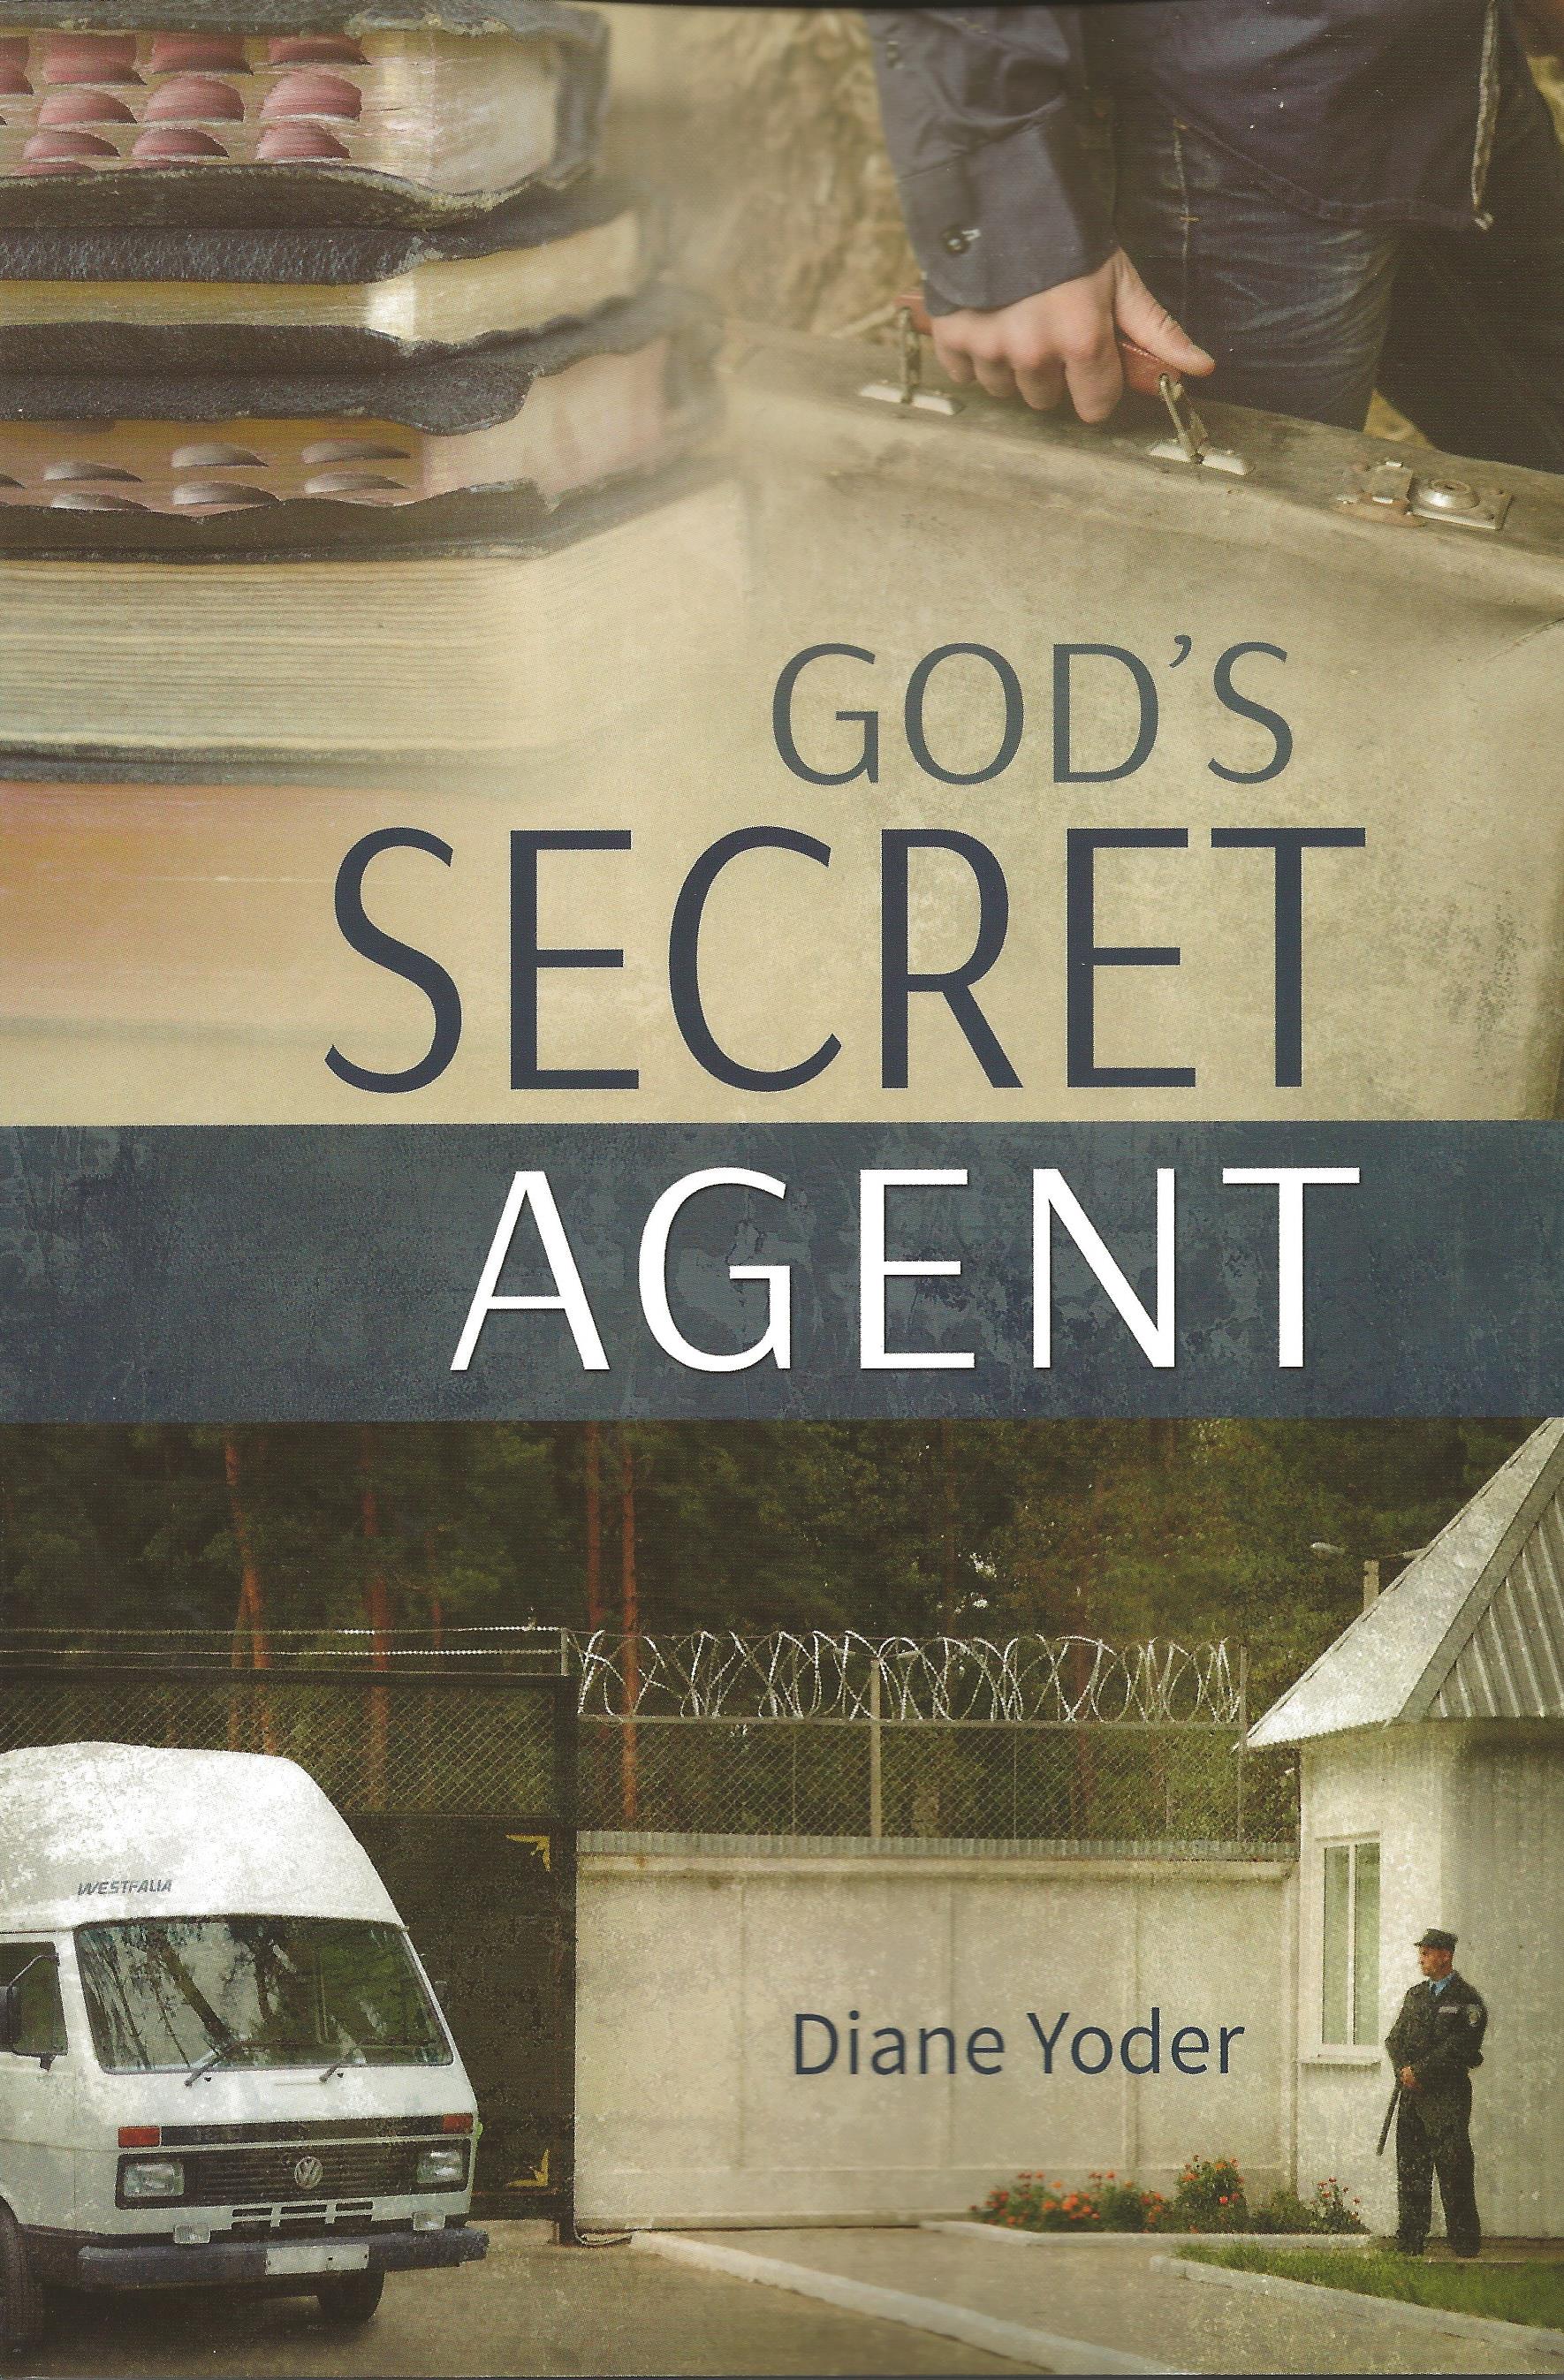 GOD'S SECRET AGENT Diane Yoder